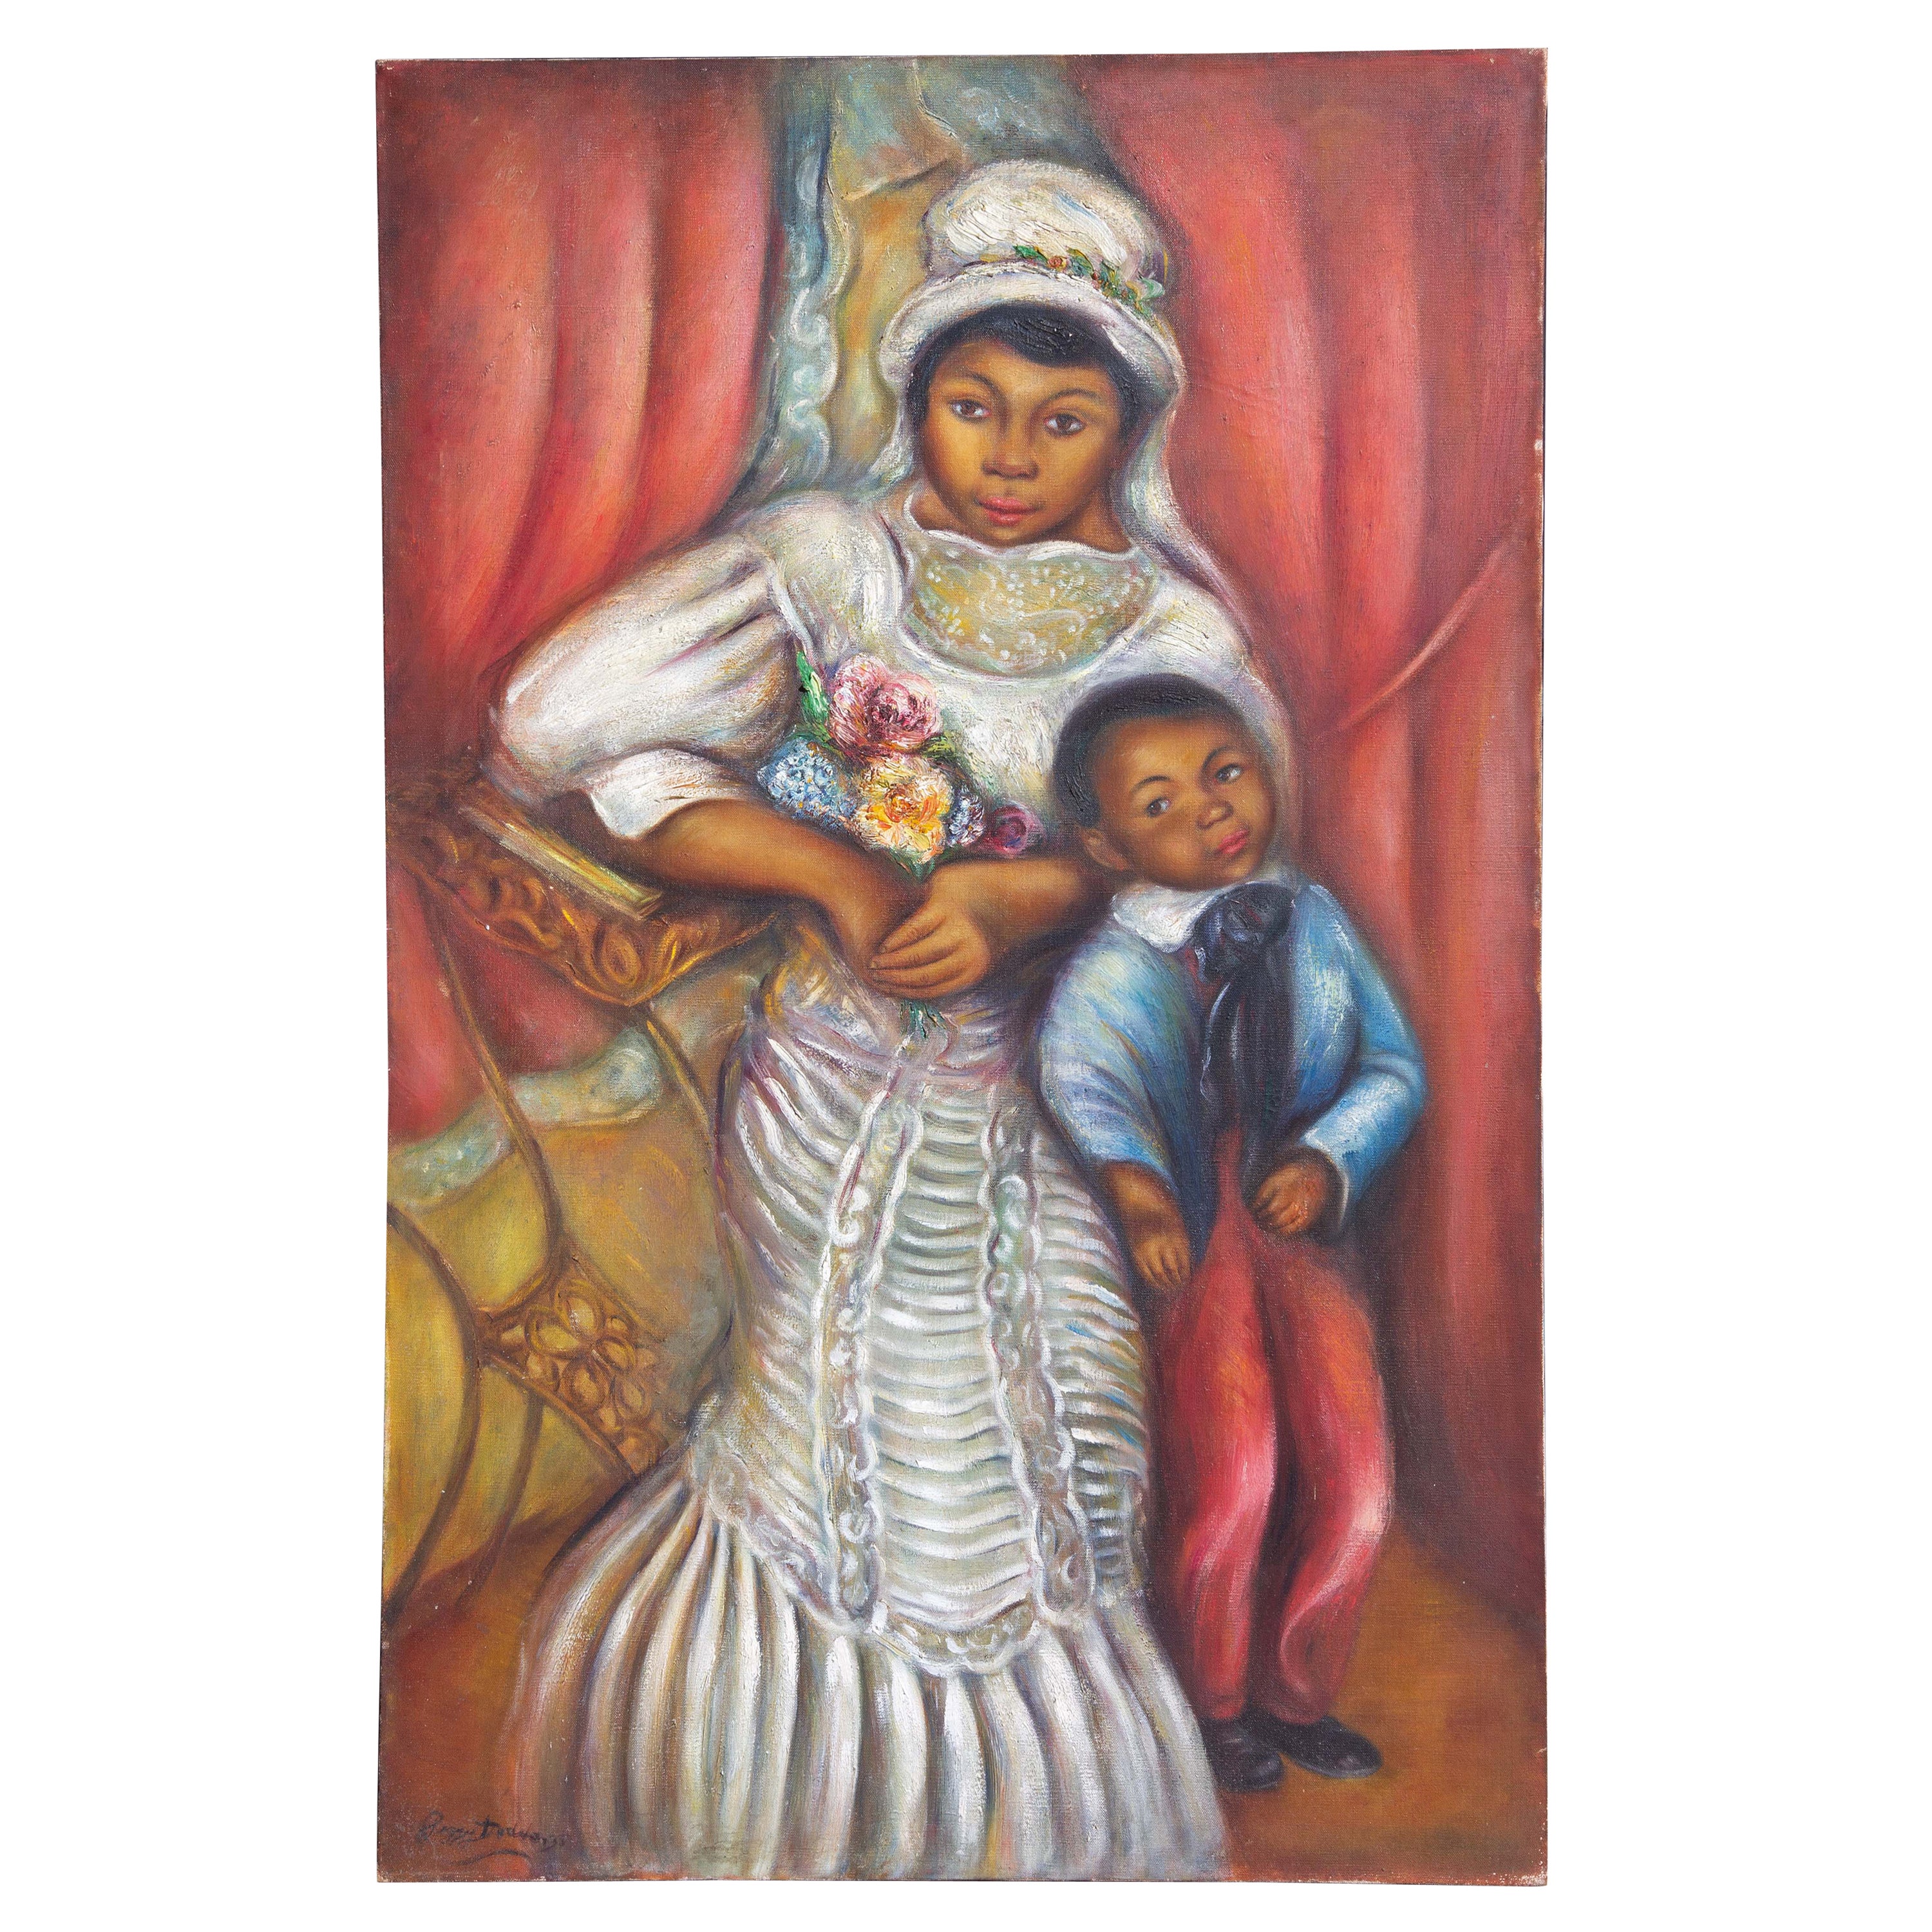 Afrikanische Mutter und Kind von Peggy Dodds, ca. 1940er Jahre